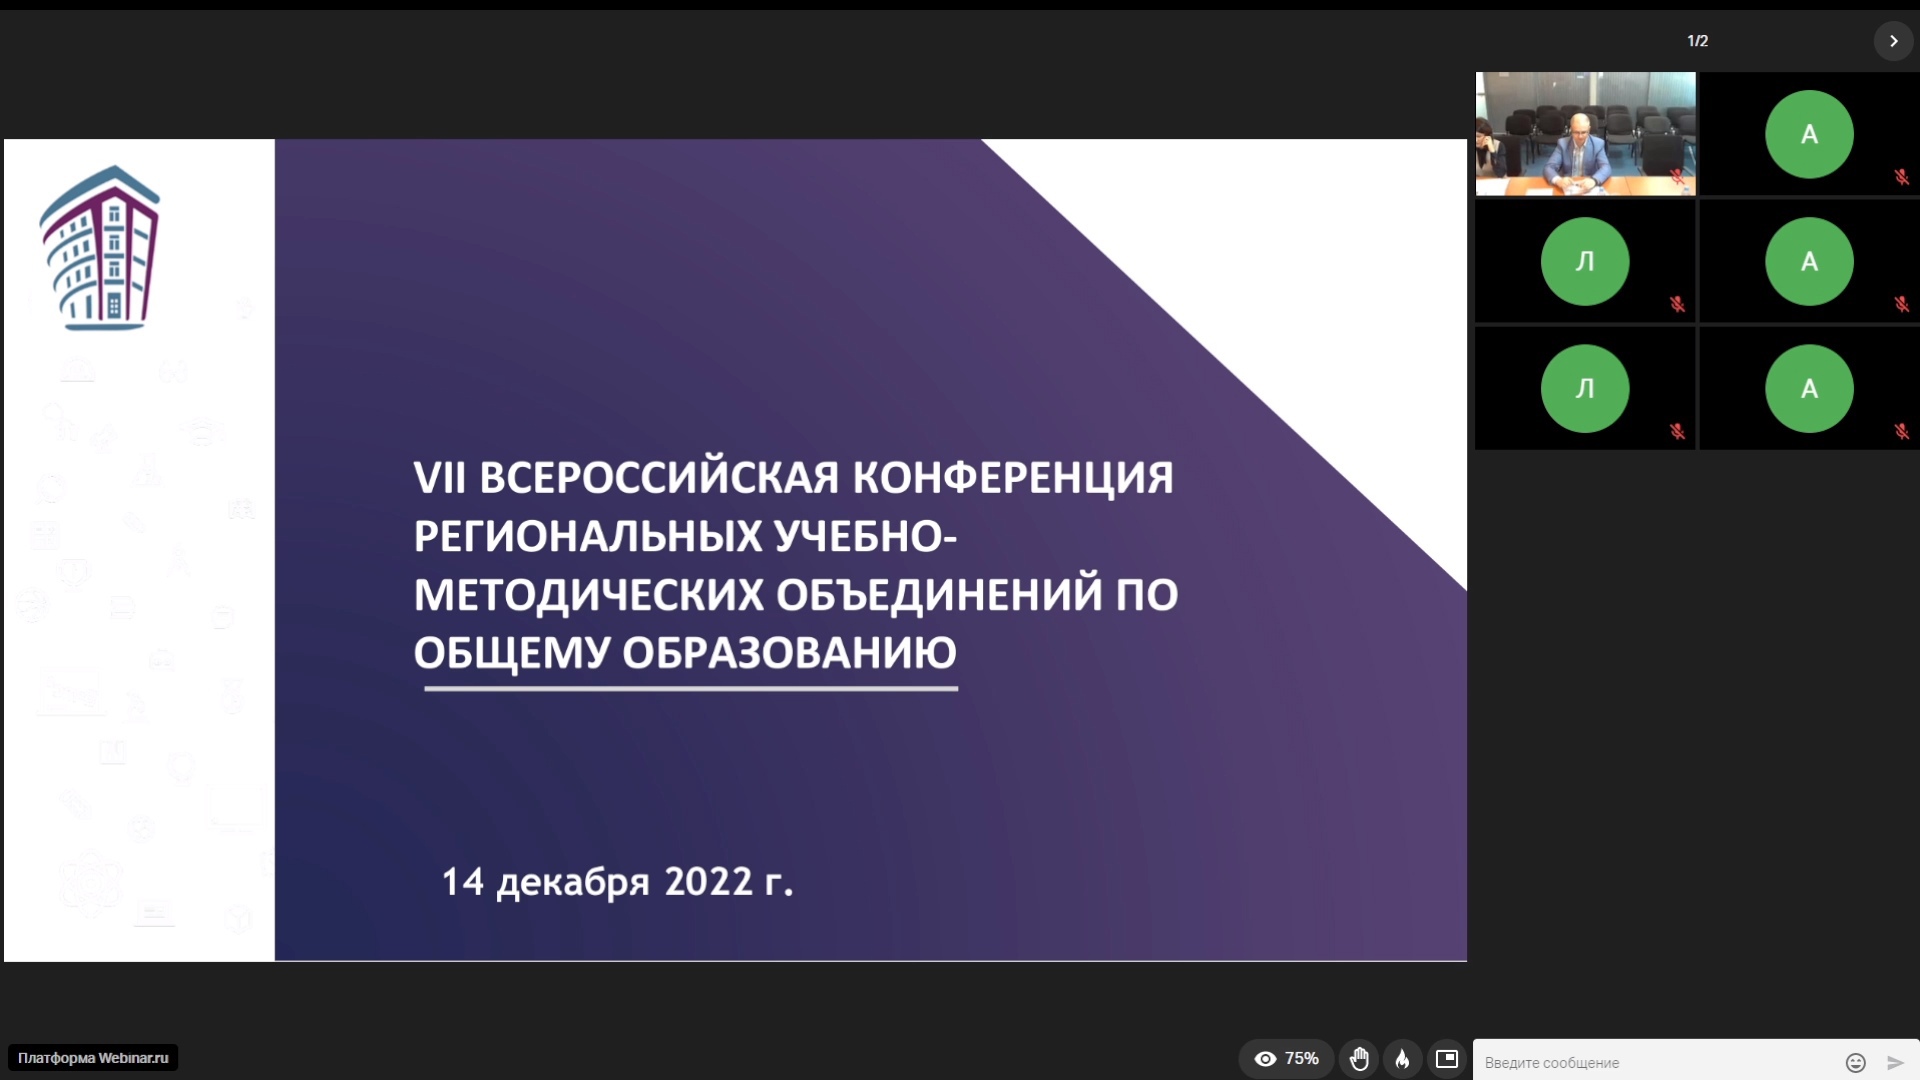 Л. И. Маршева выступила с докладом на VII Всероссийской конференции региональных учебно-методических объединений по общему образованию 